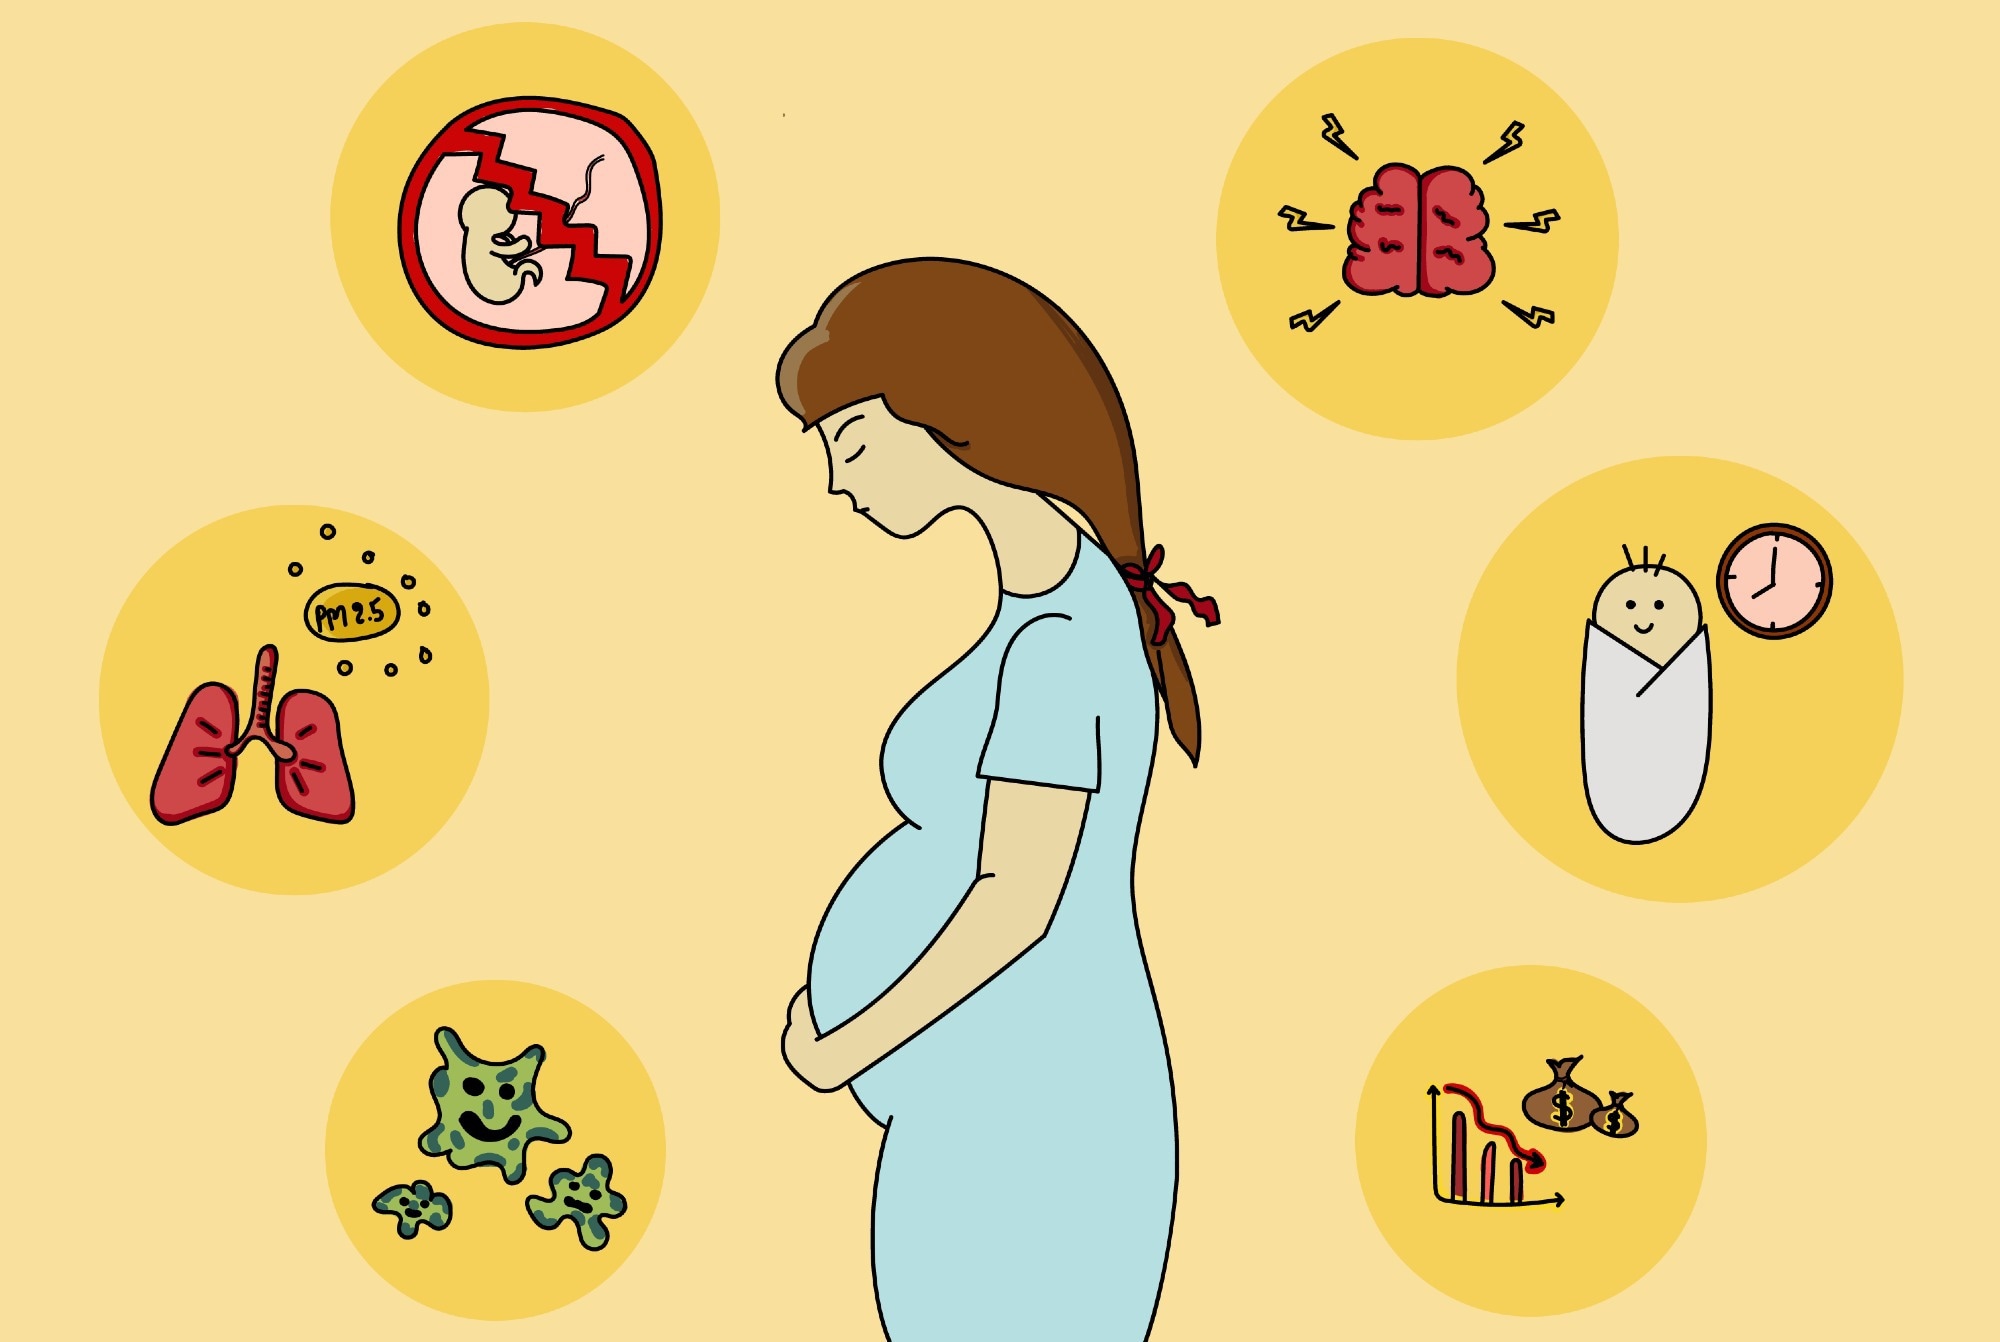 مطالعه: افسردگی، اضطراب و استرس در بارداری و پس از زایمان: یک مطالعه طولی در طول همه گیری COVID-19.  اعتبار تصویر: Mr.Thunman / Shutterstock